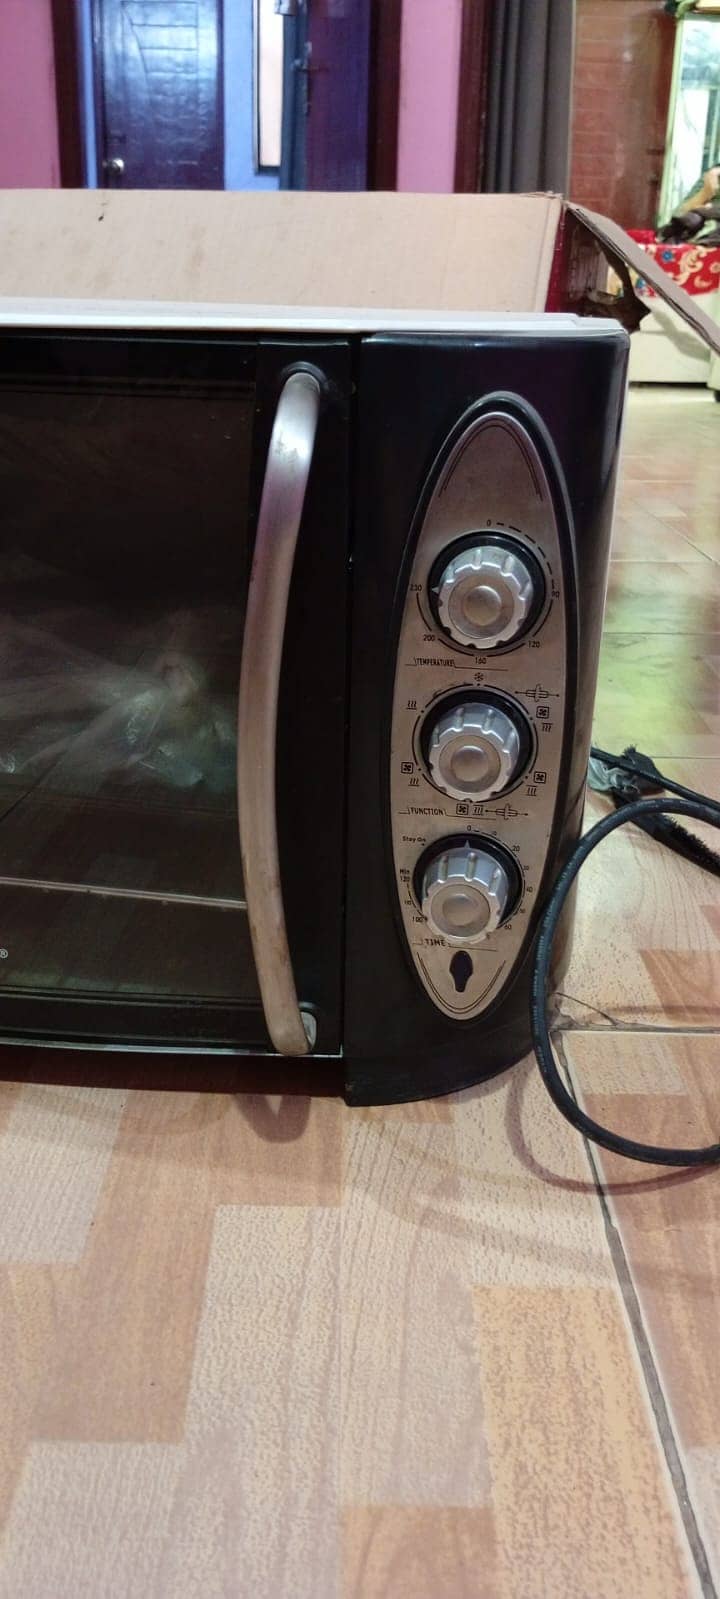 Westpoint Deluxe Rotisserie Oven 6